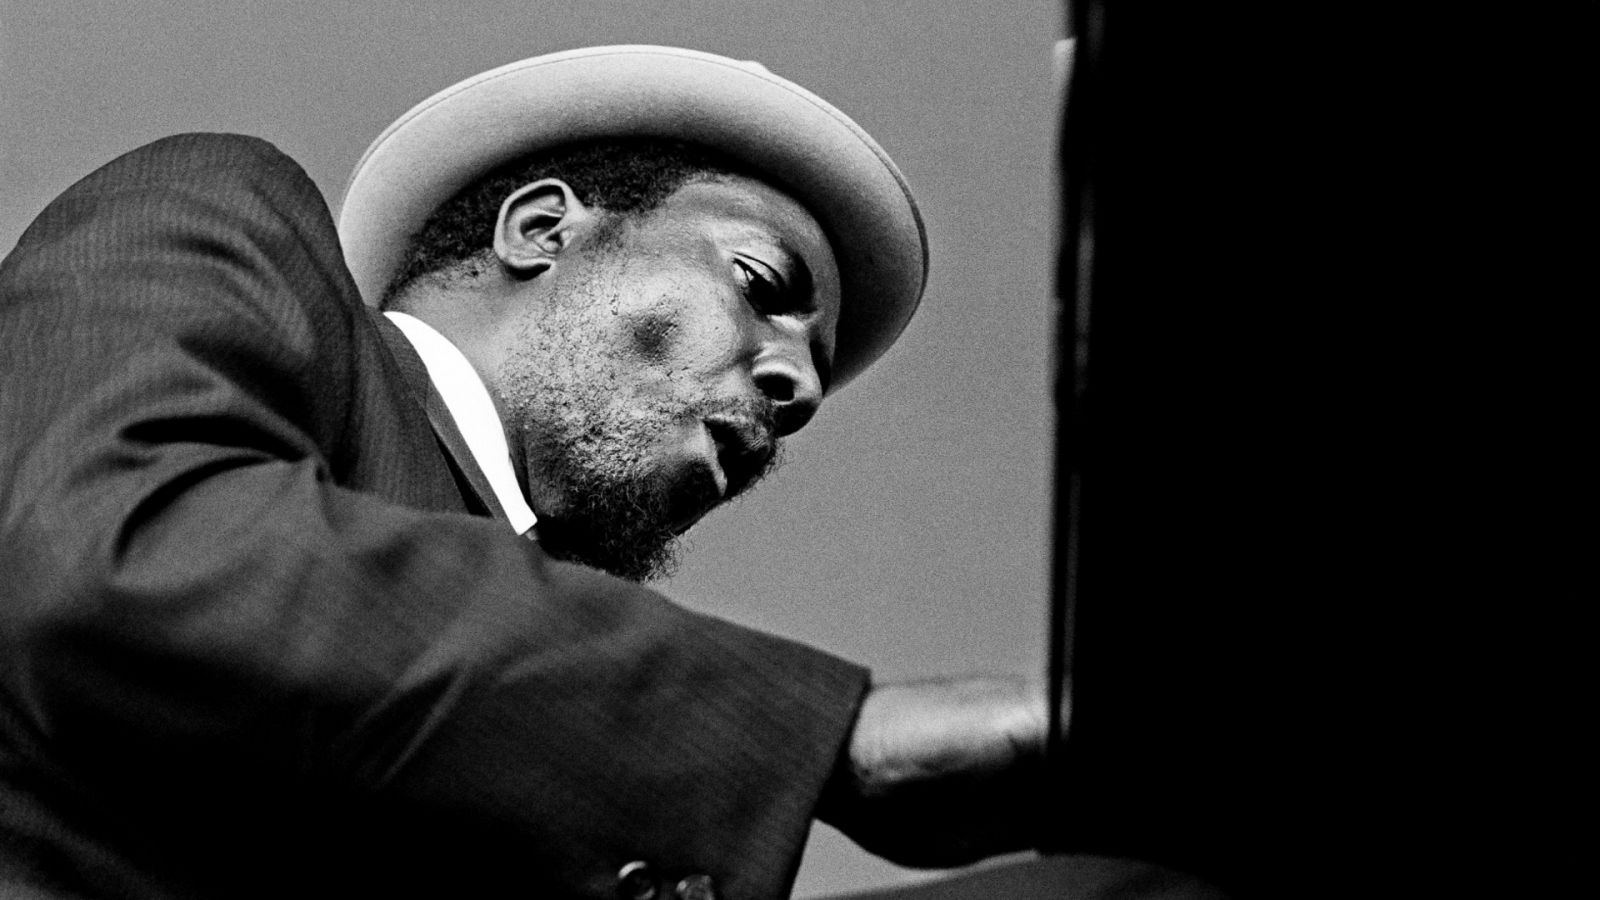 La historia detrás de un concierto de Thelonious Monk que unió a una comunidad dividida por el racismo